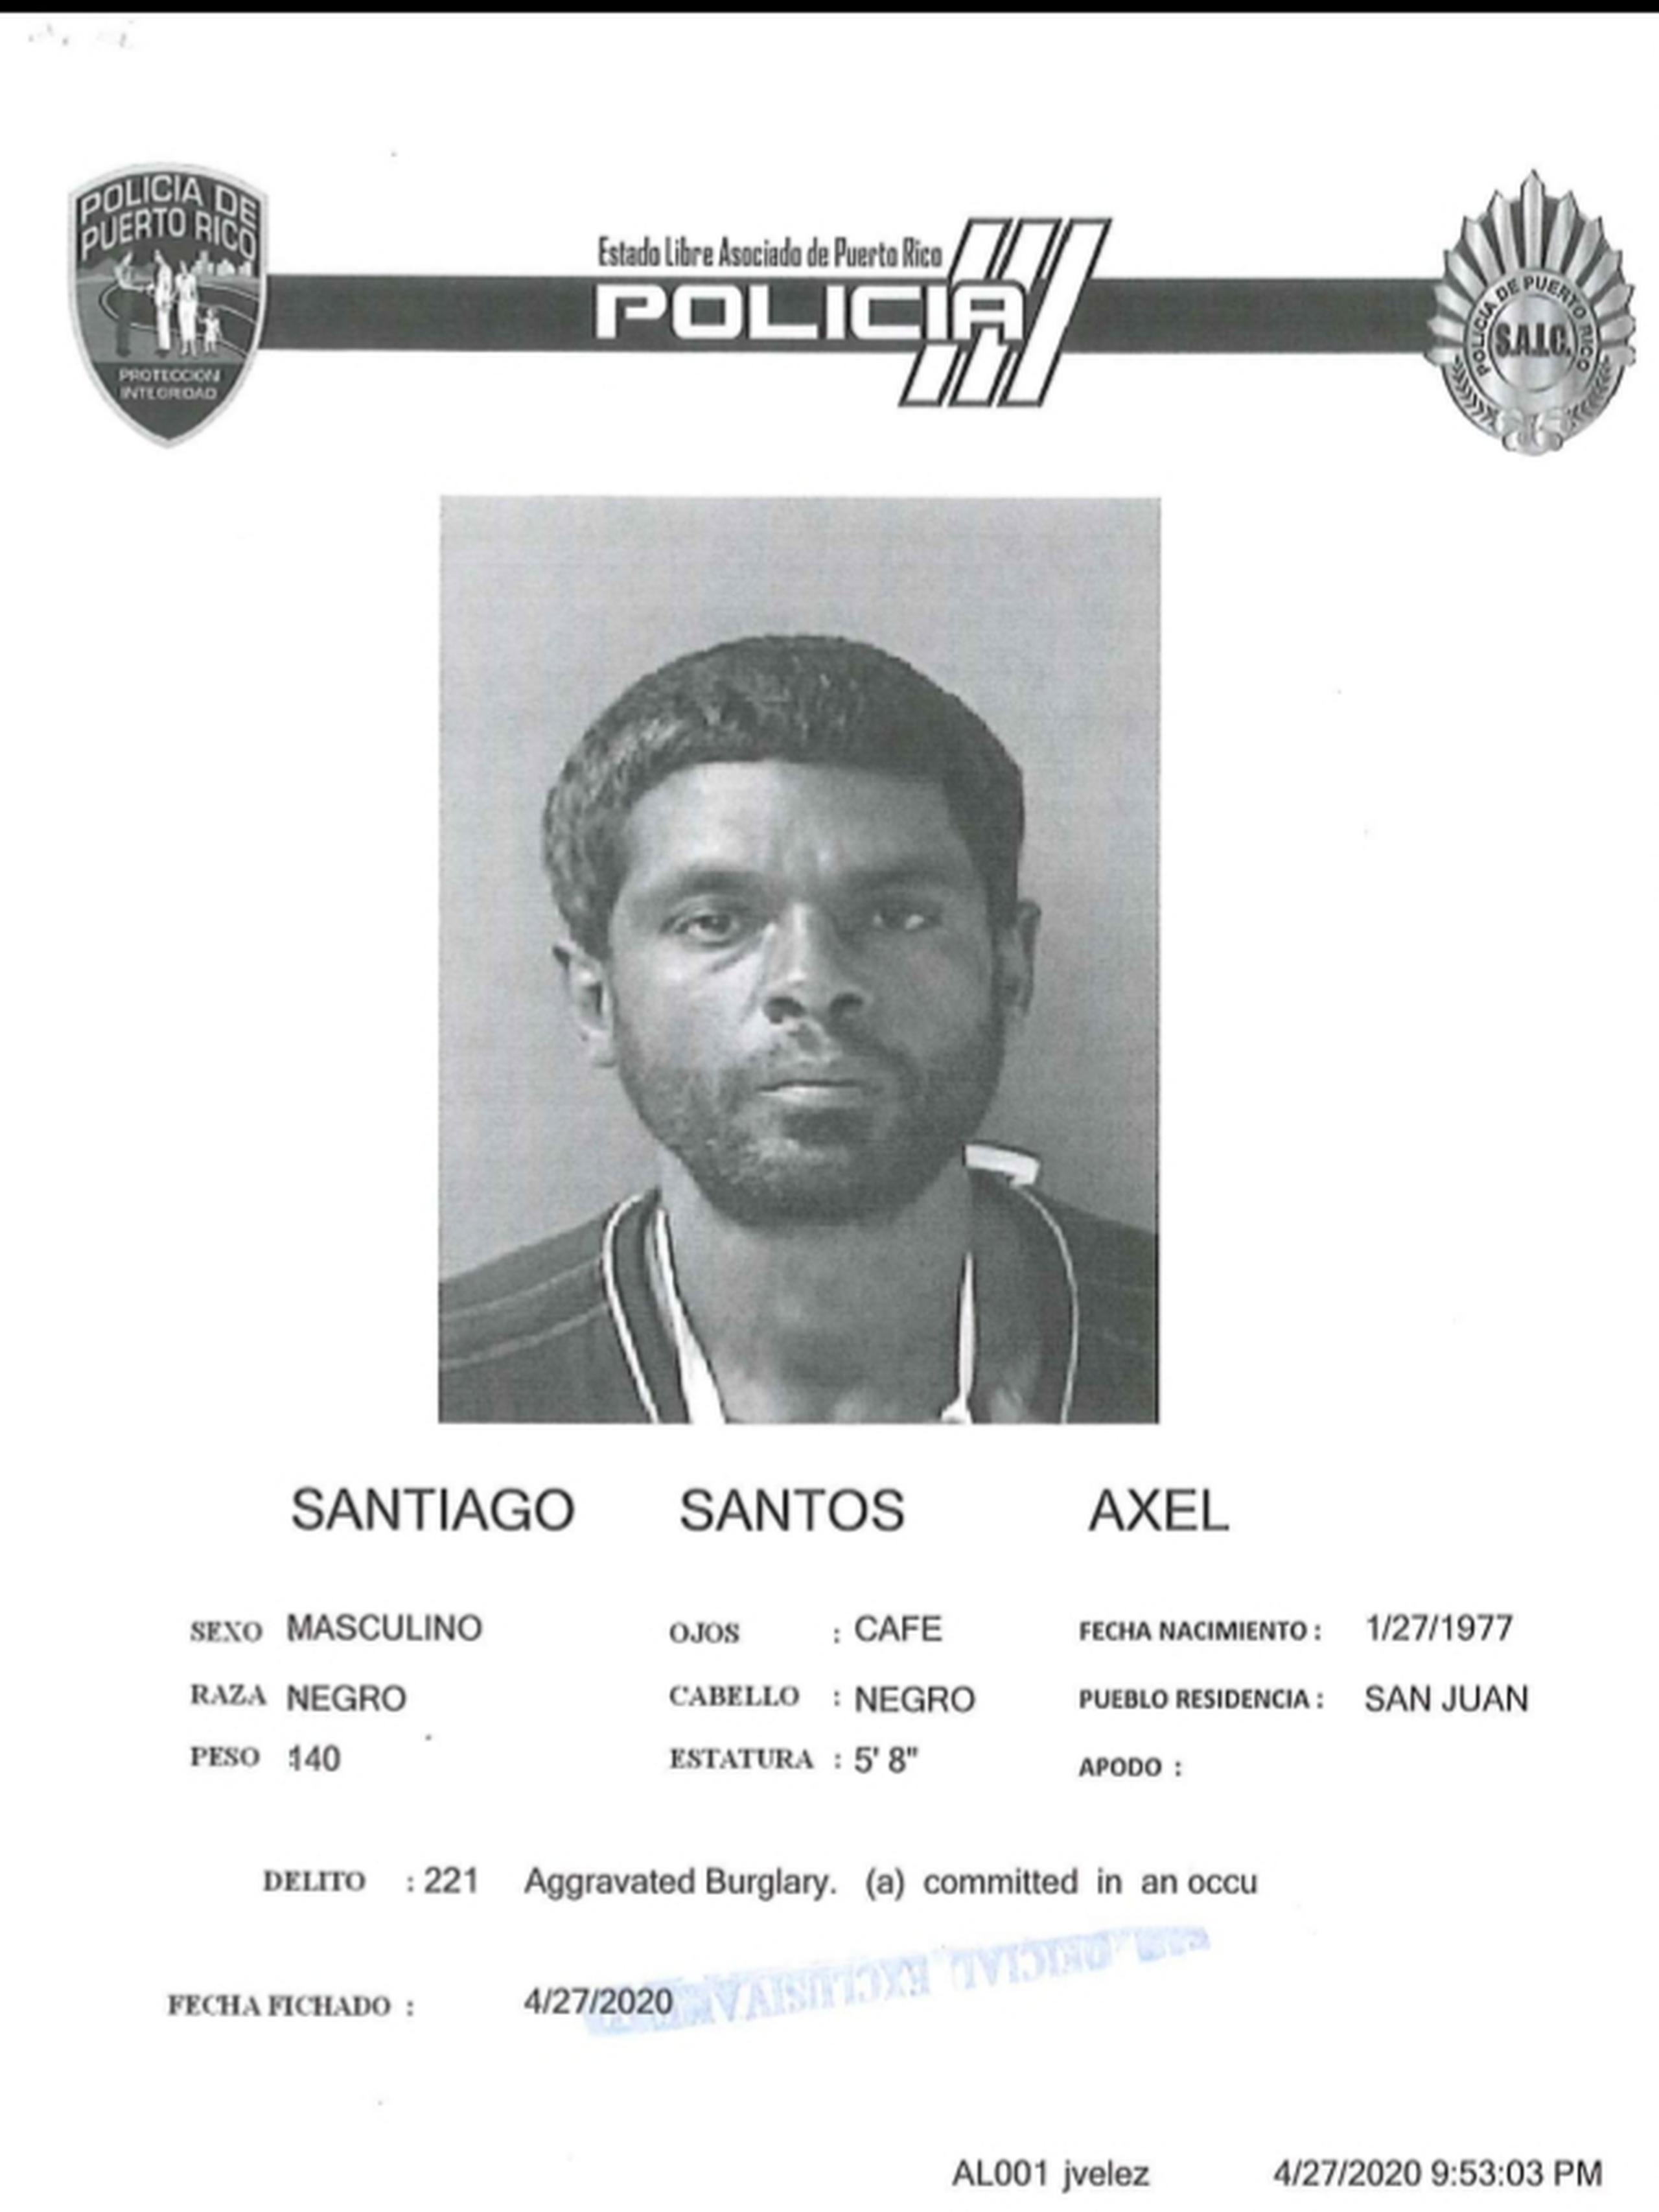 Axel Santiago Santos fue acusado e ingresado en prisión junto a otro individuo por escalar el Departamento de Finanzas del hospital Pavía, en Santurce.